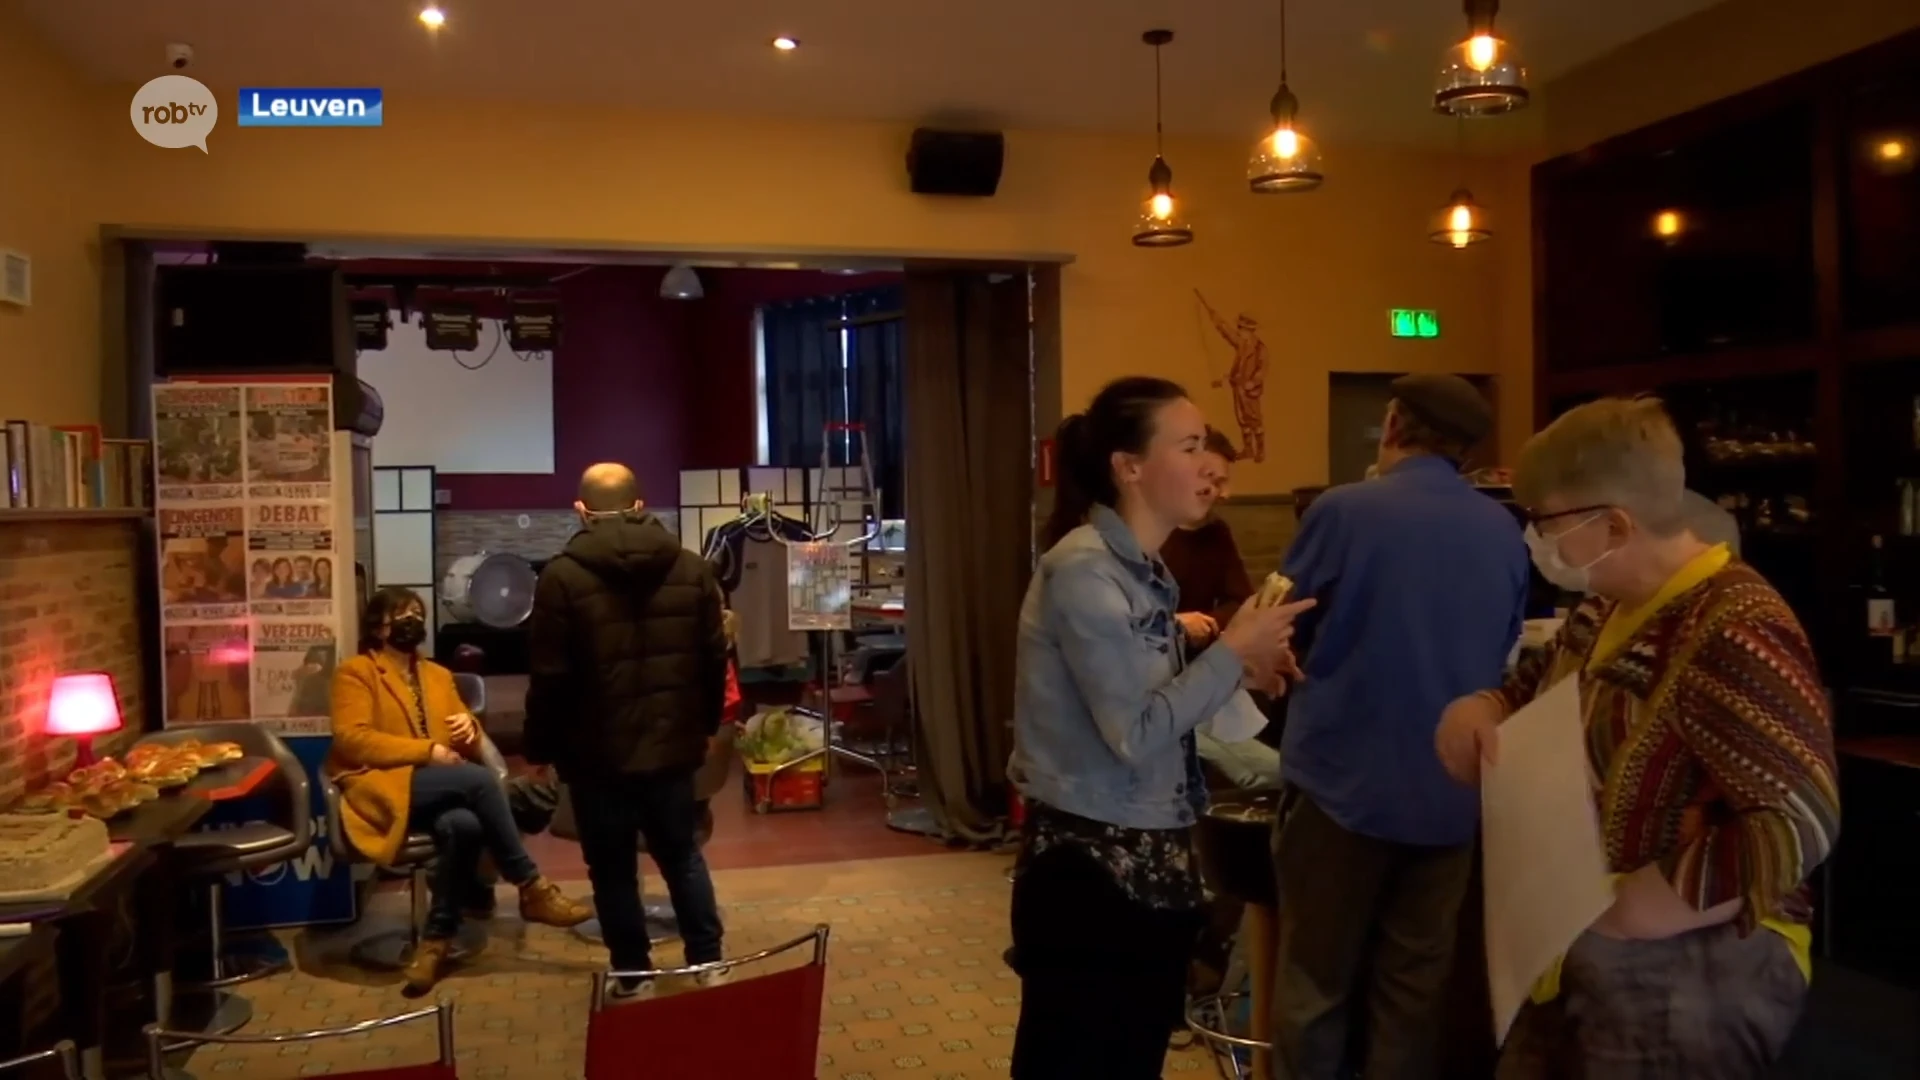 Buurtbewoners openen samen café: "Er zijn eigenlijk geen bazen en geen personeel"